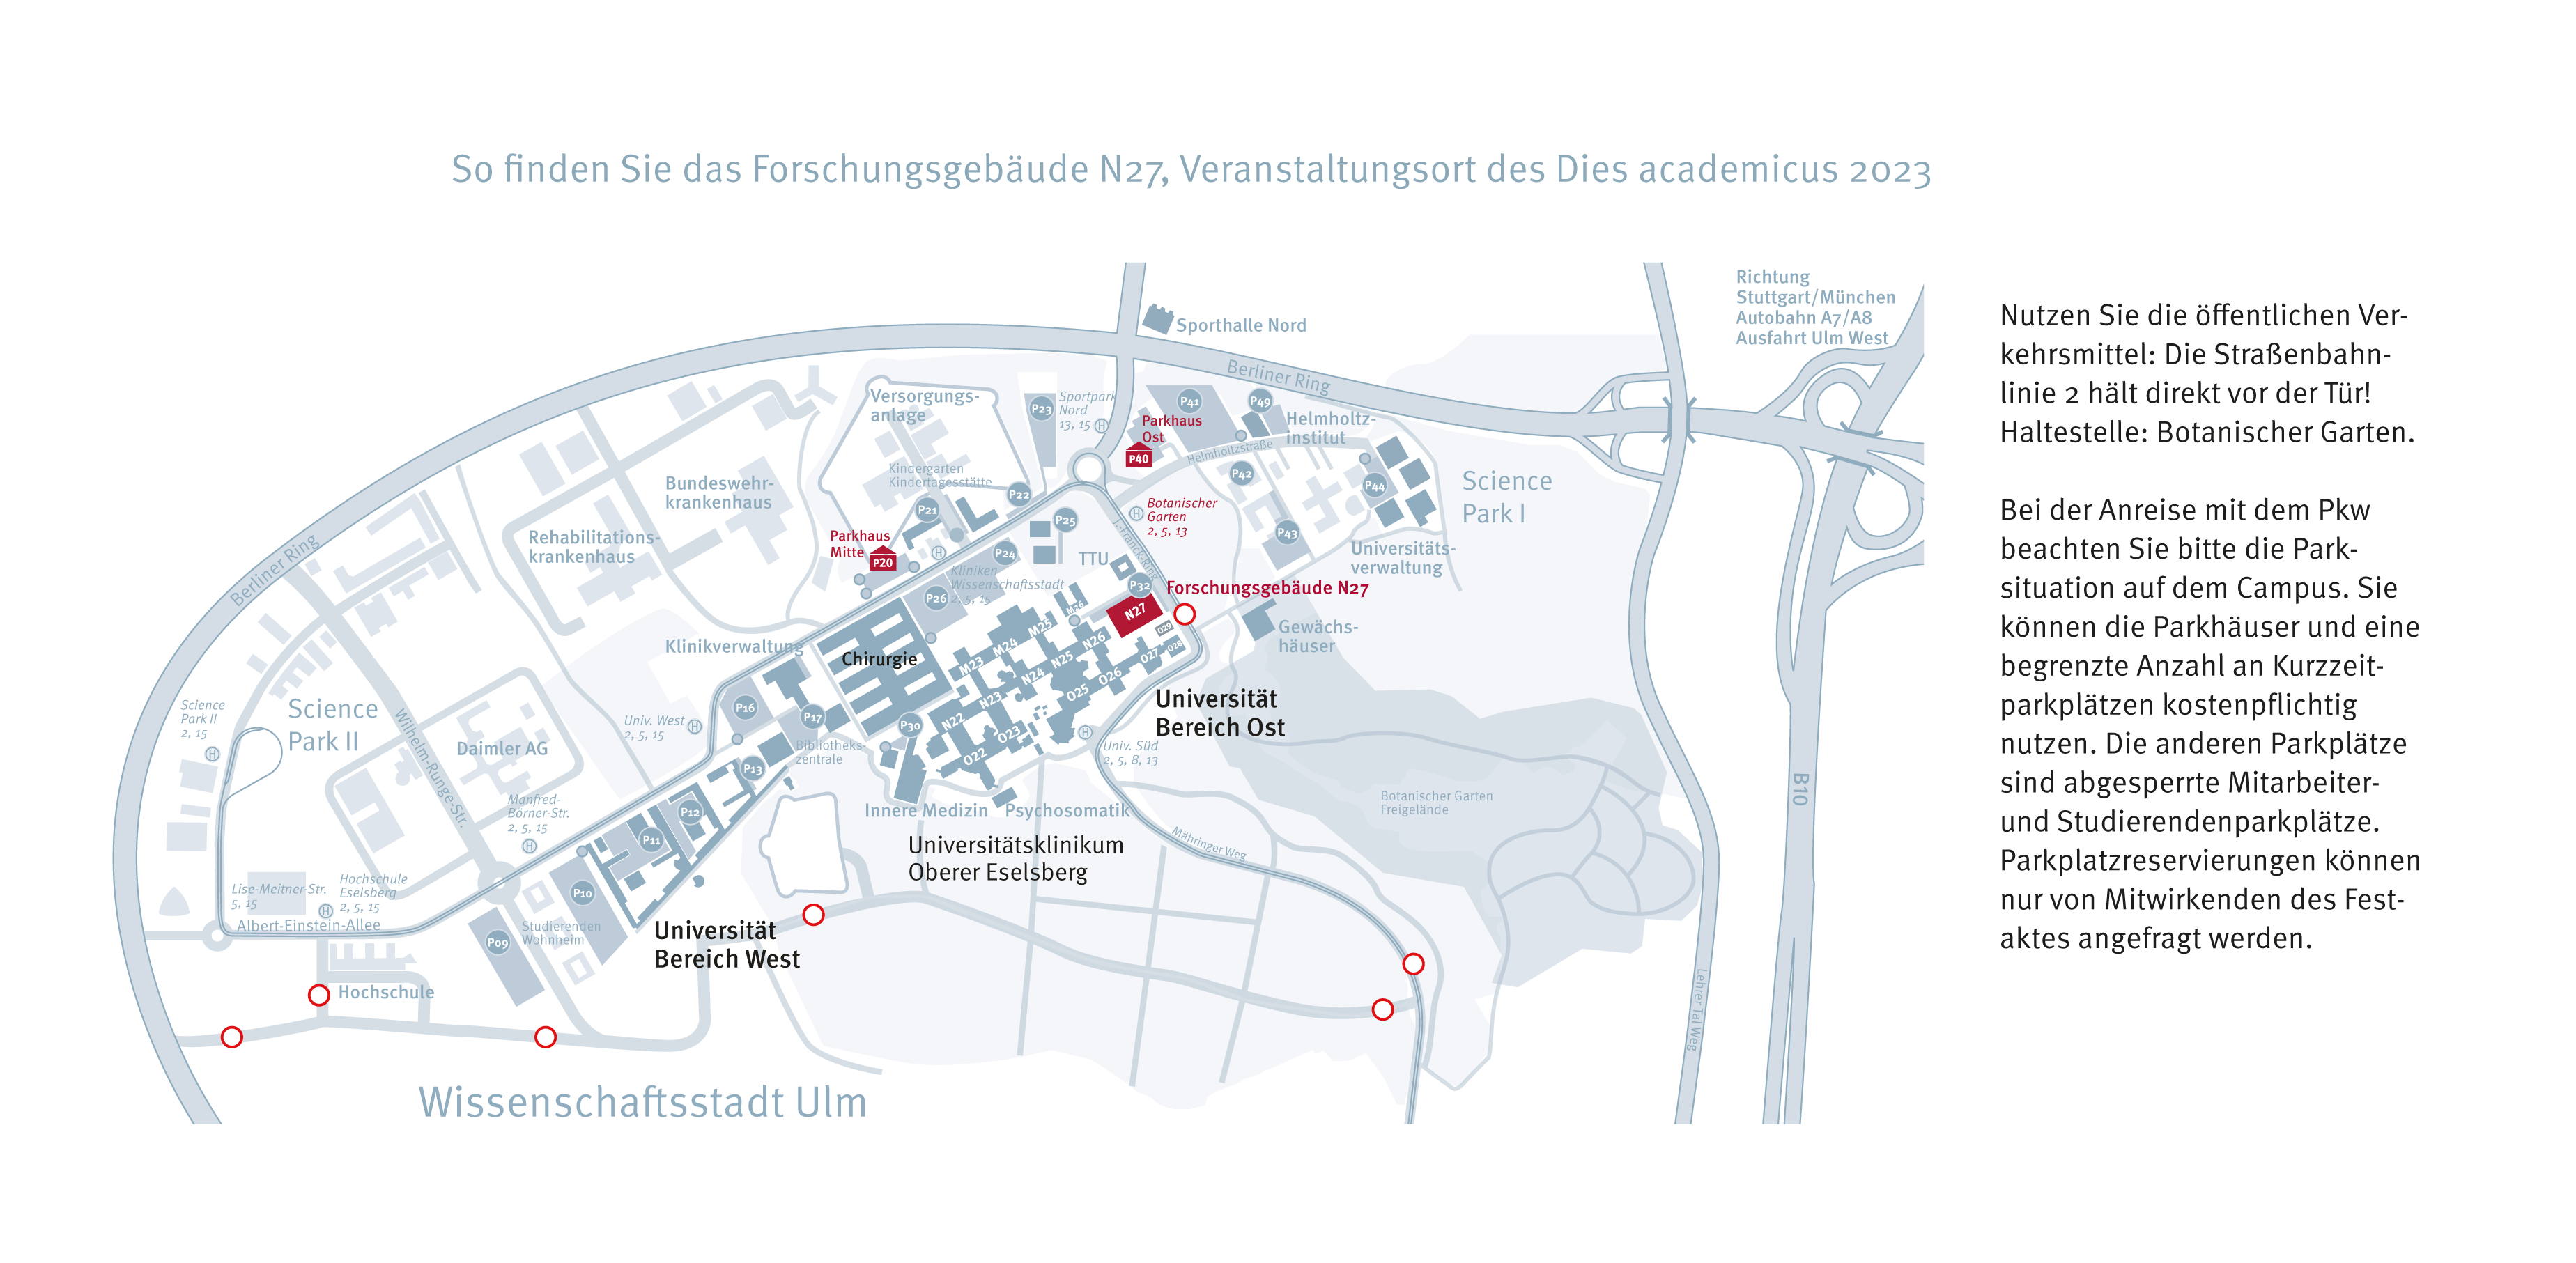 Anfahrtsskizze zum Dies academicus der Universität Ulm am 03.02.2023. Bild klicken für PDF Download.